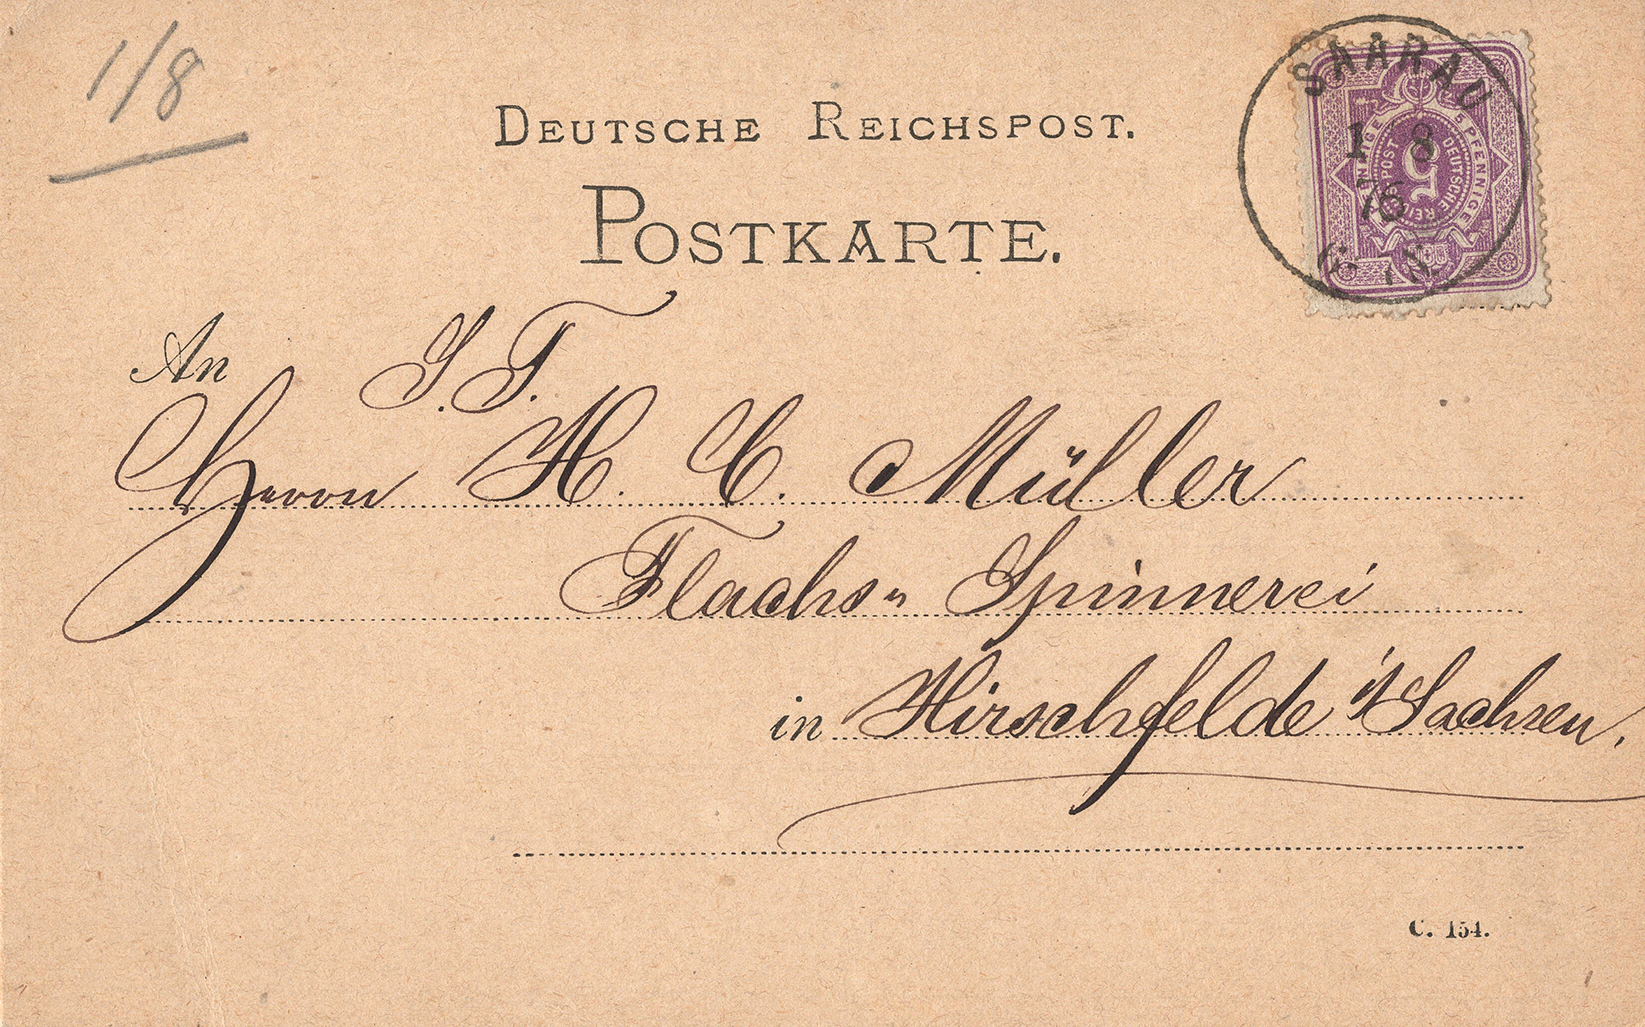 Kartka korespondencyjna Chamottefabrik von C. Kulmiz 1876 (1)